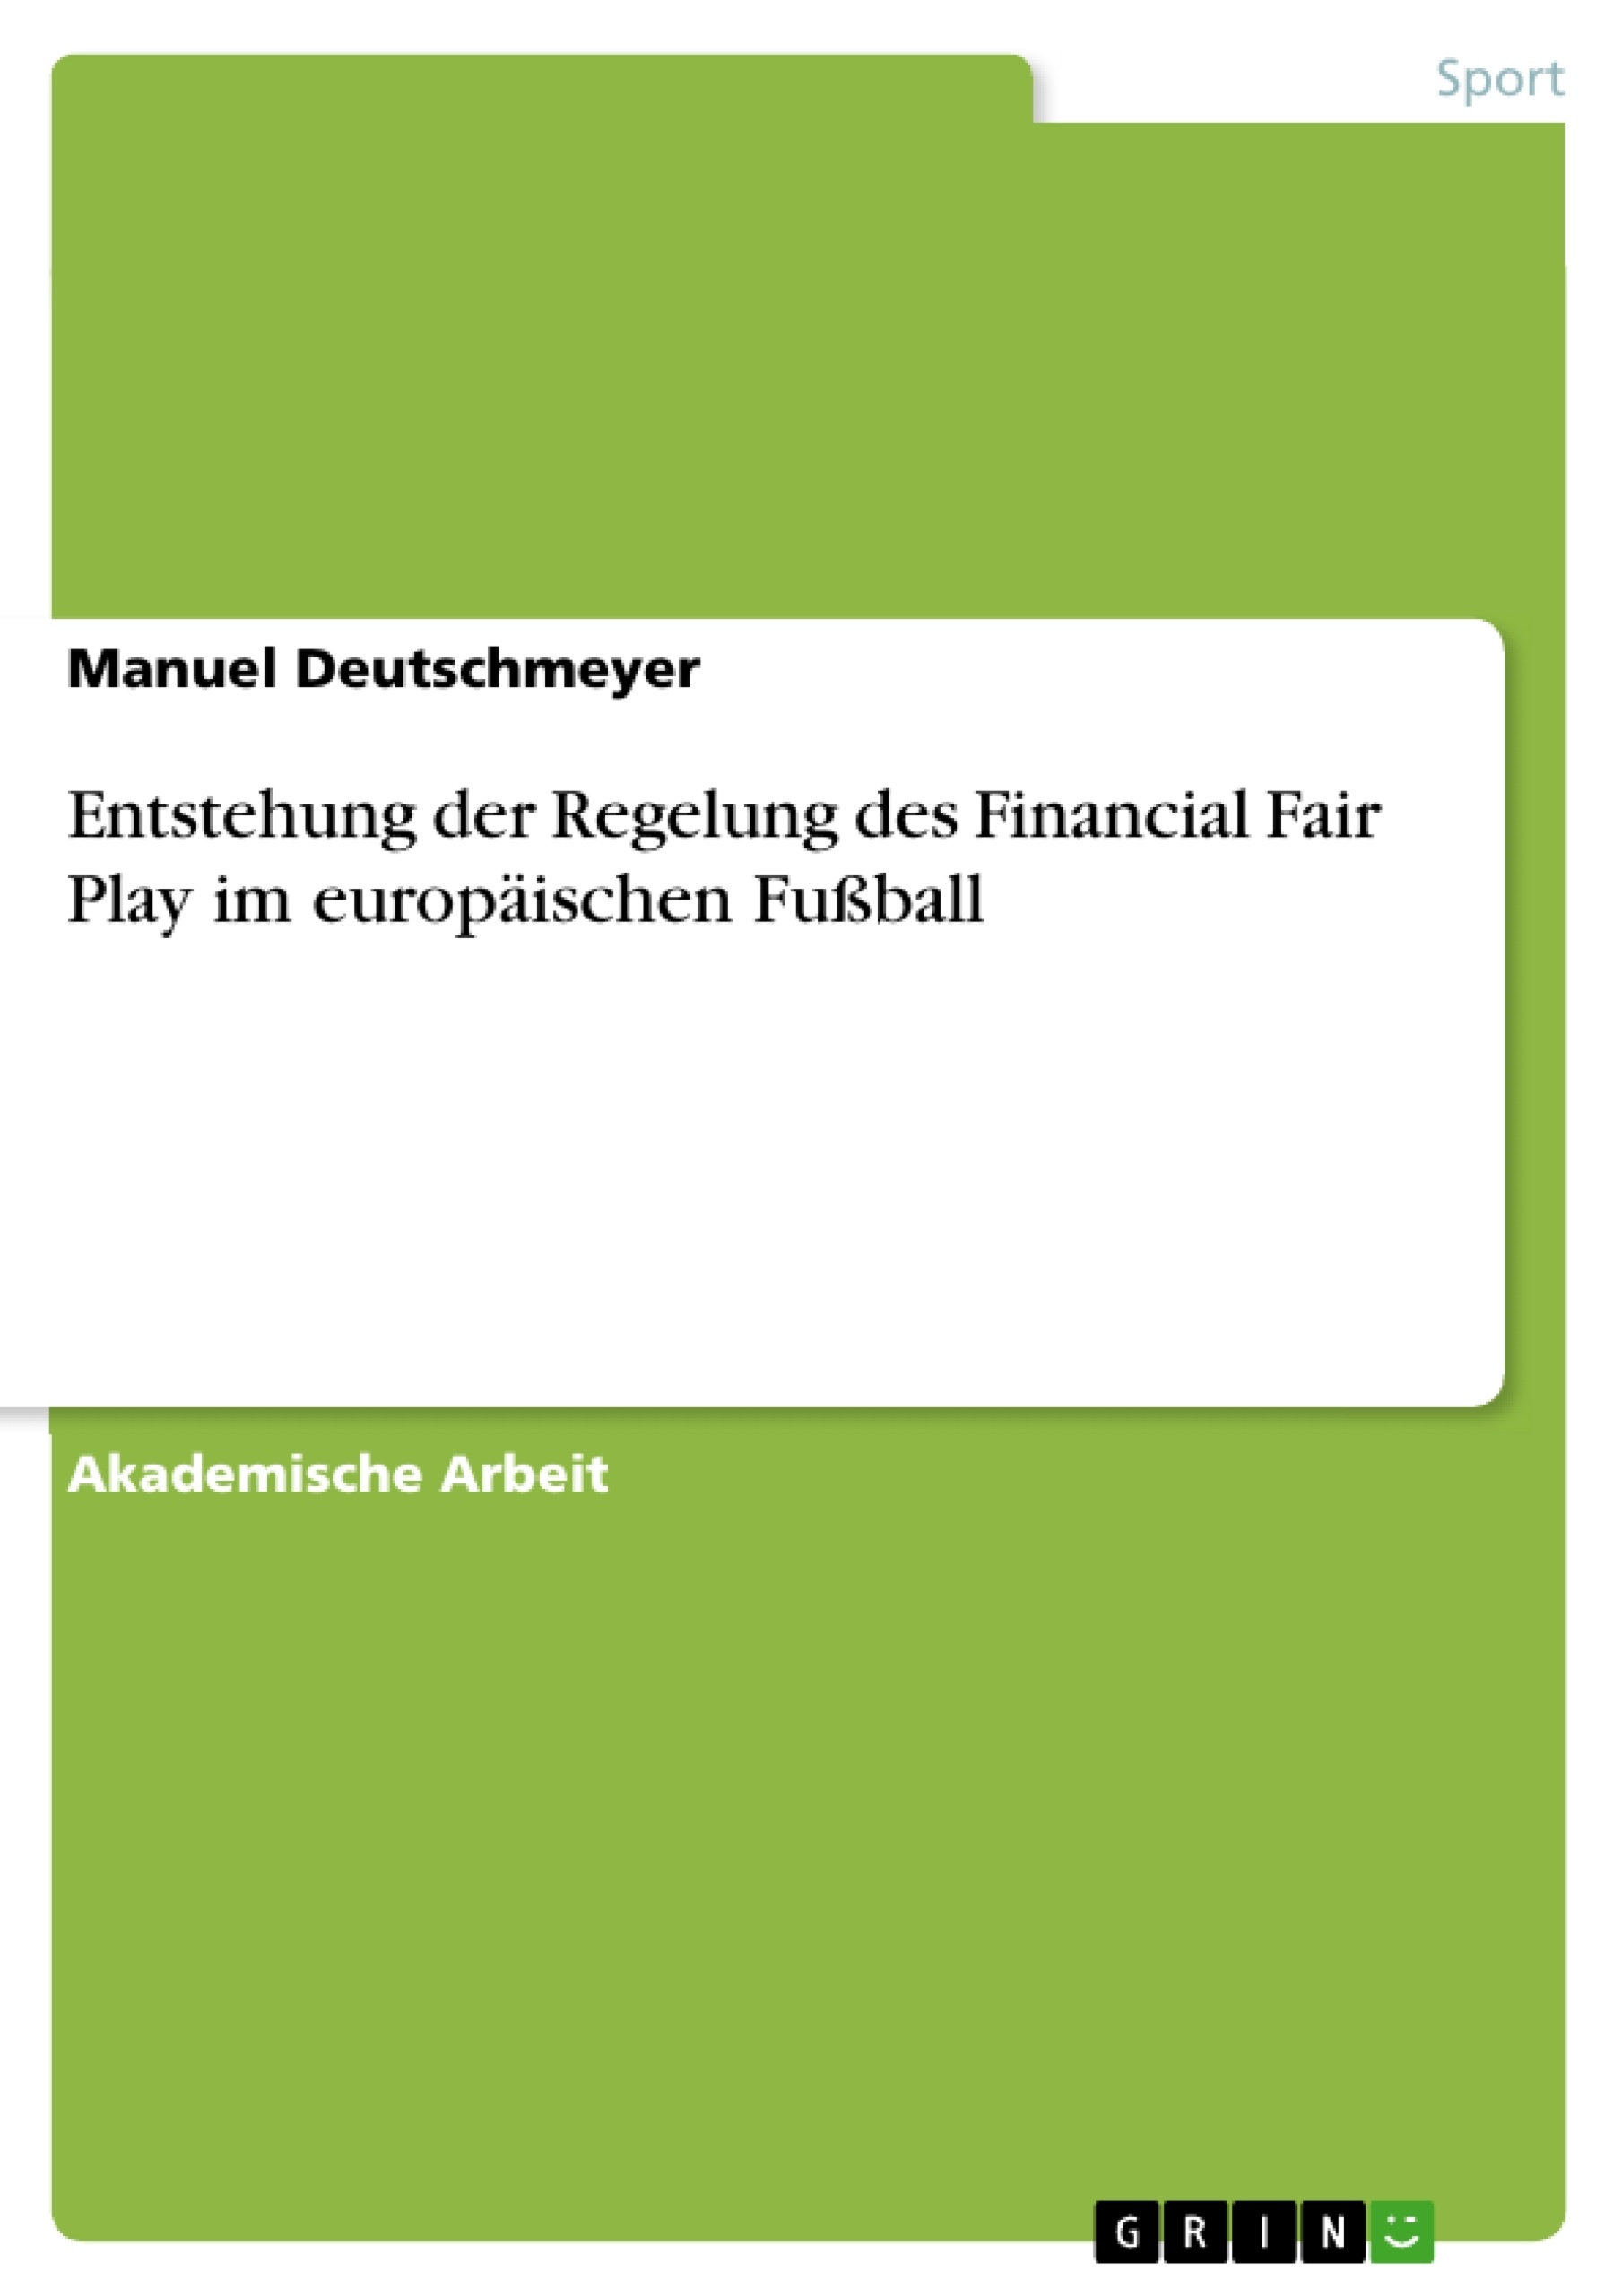 Título: Entstehung der Regelung des Financial Fair Play im europäischen Fußball